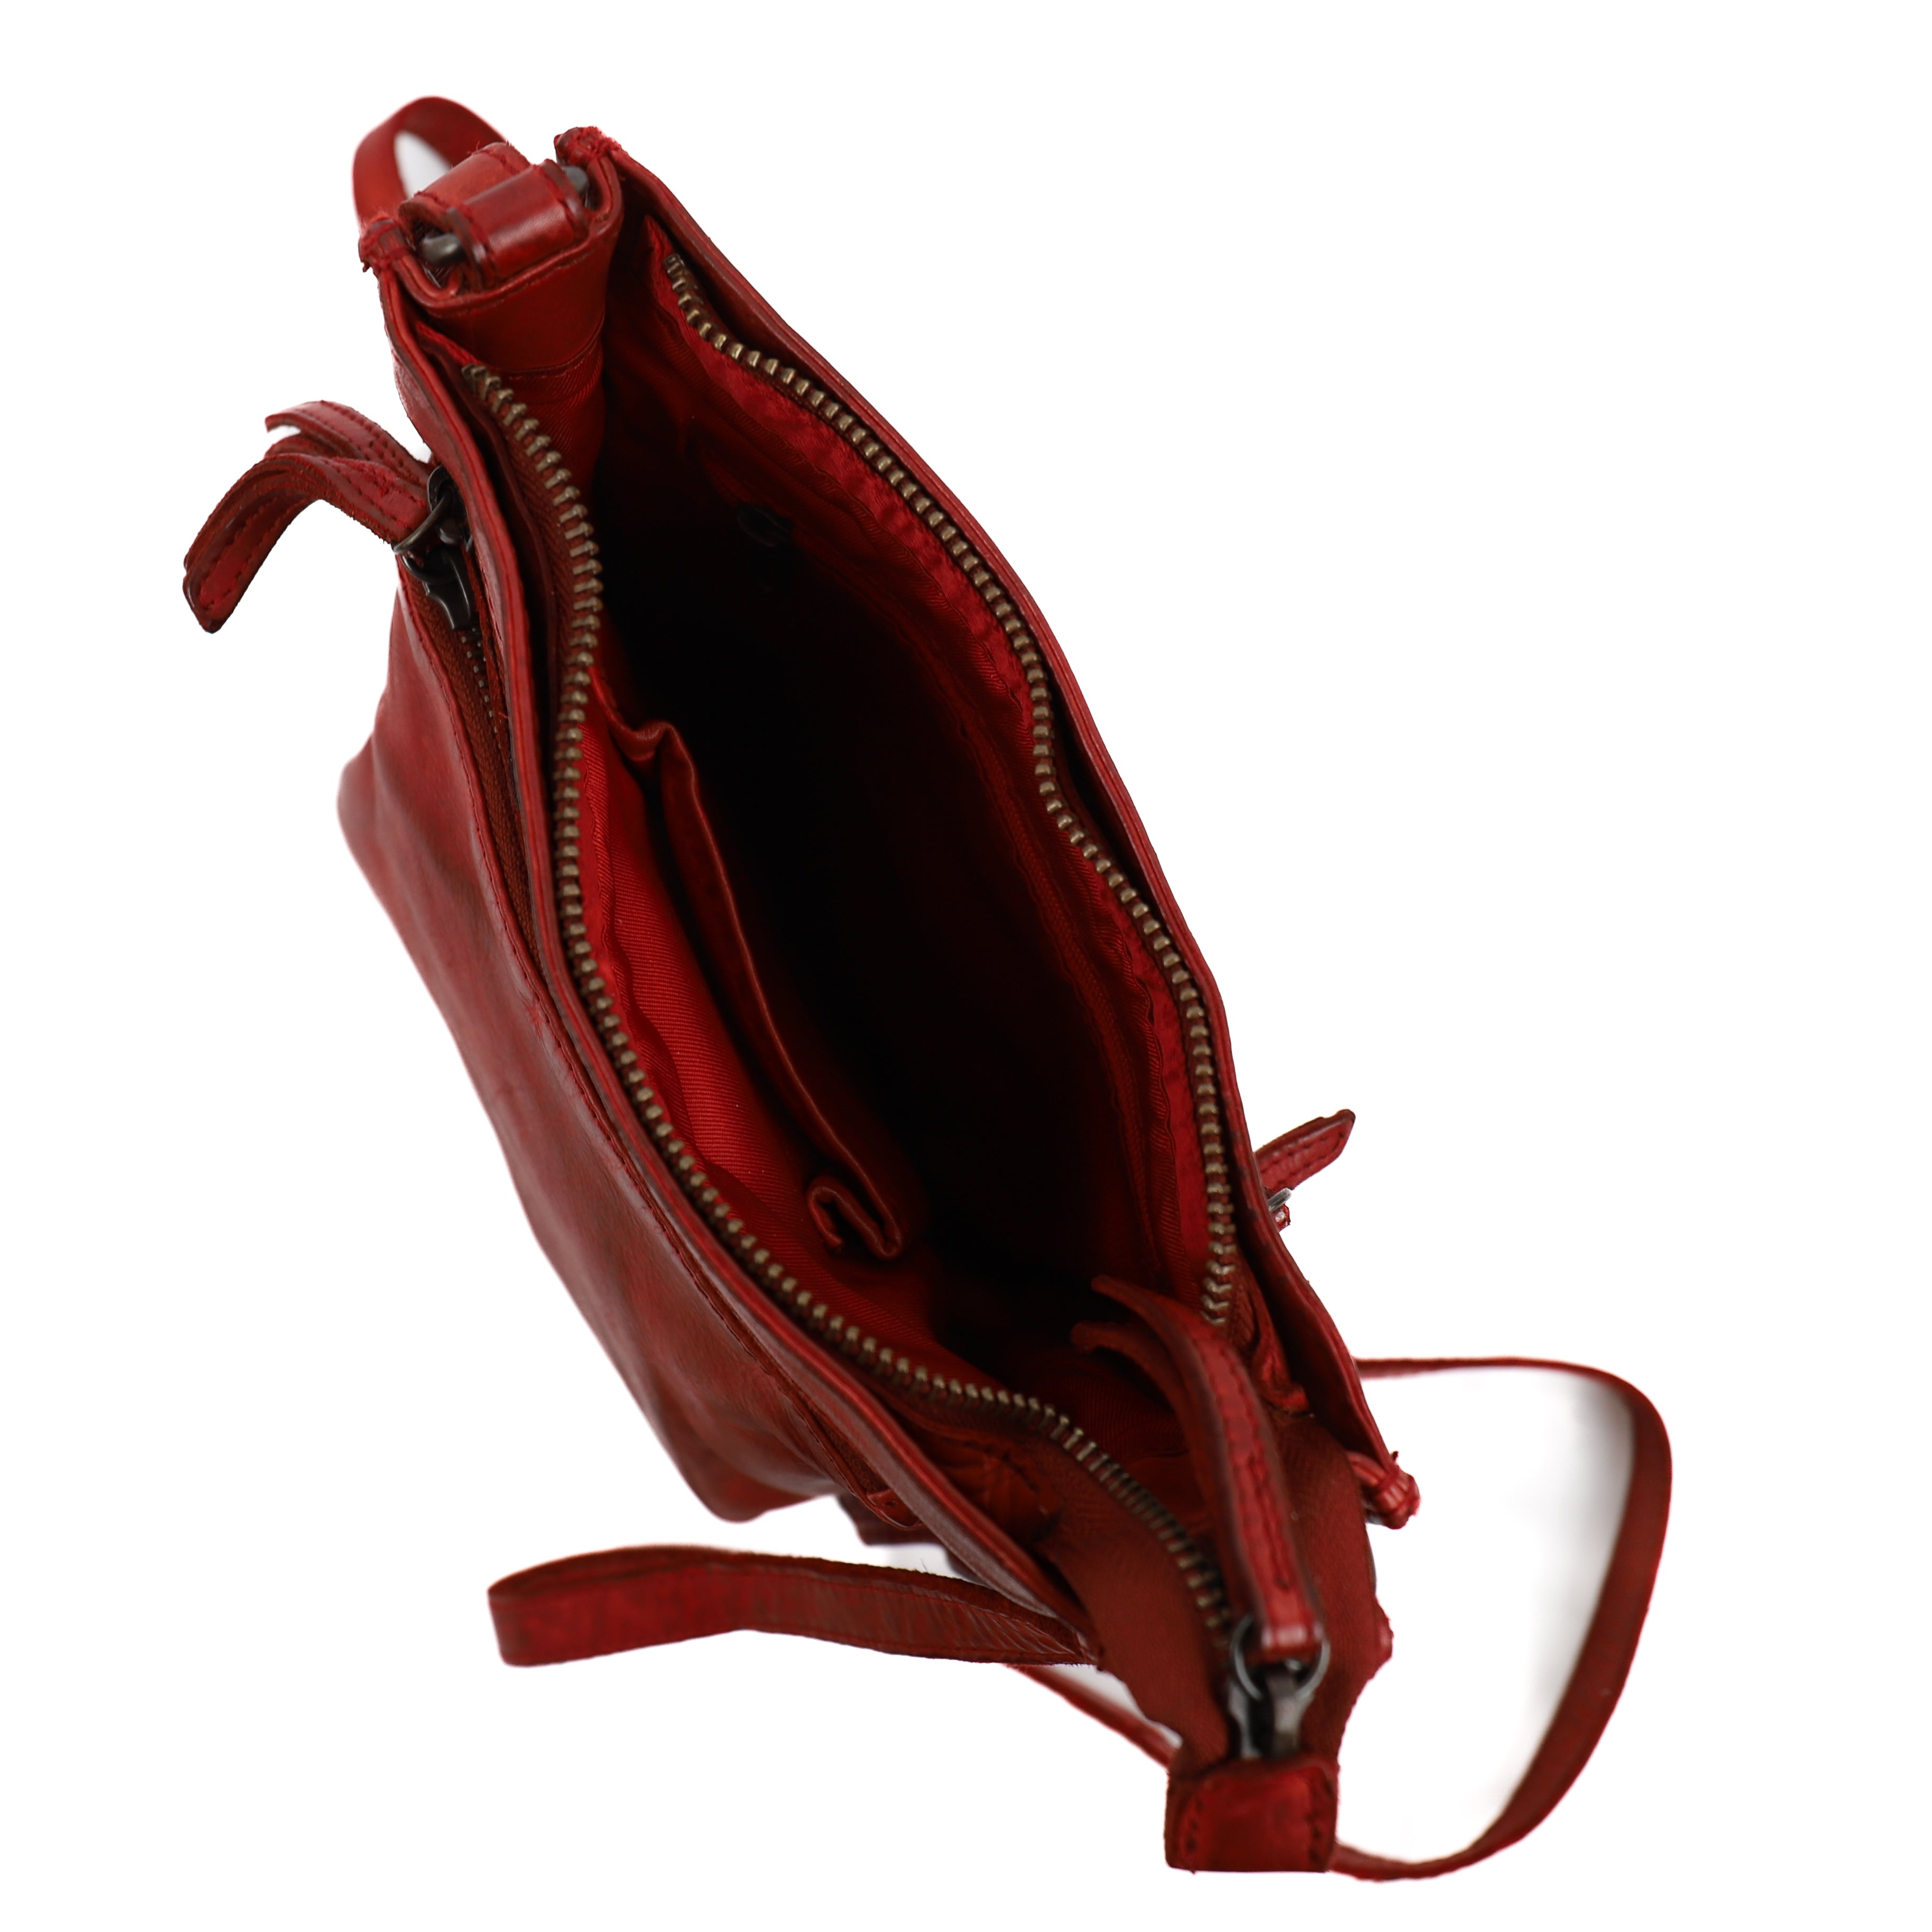 Shoulder bag 'Davita' red